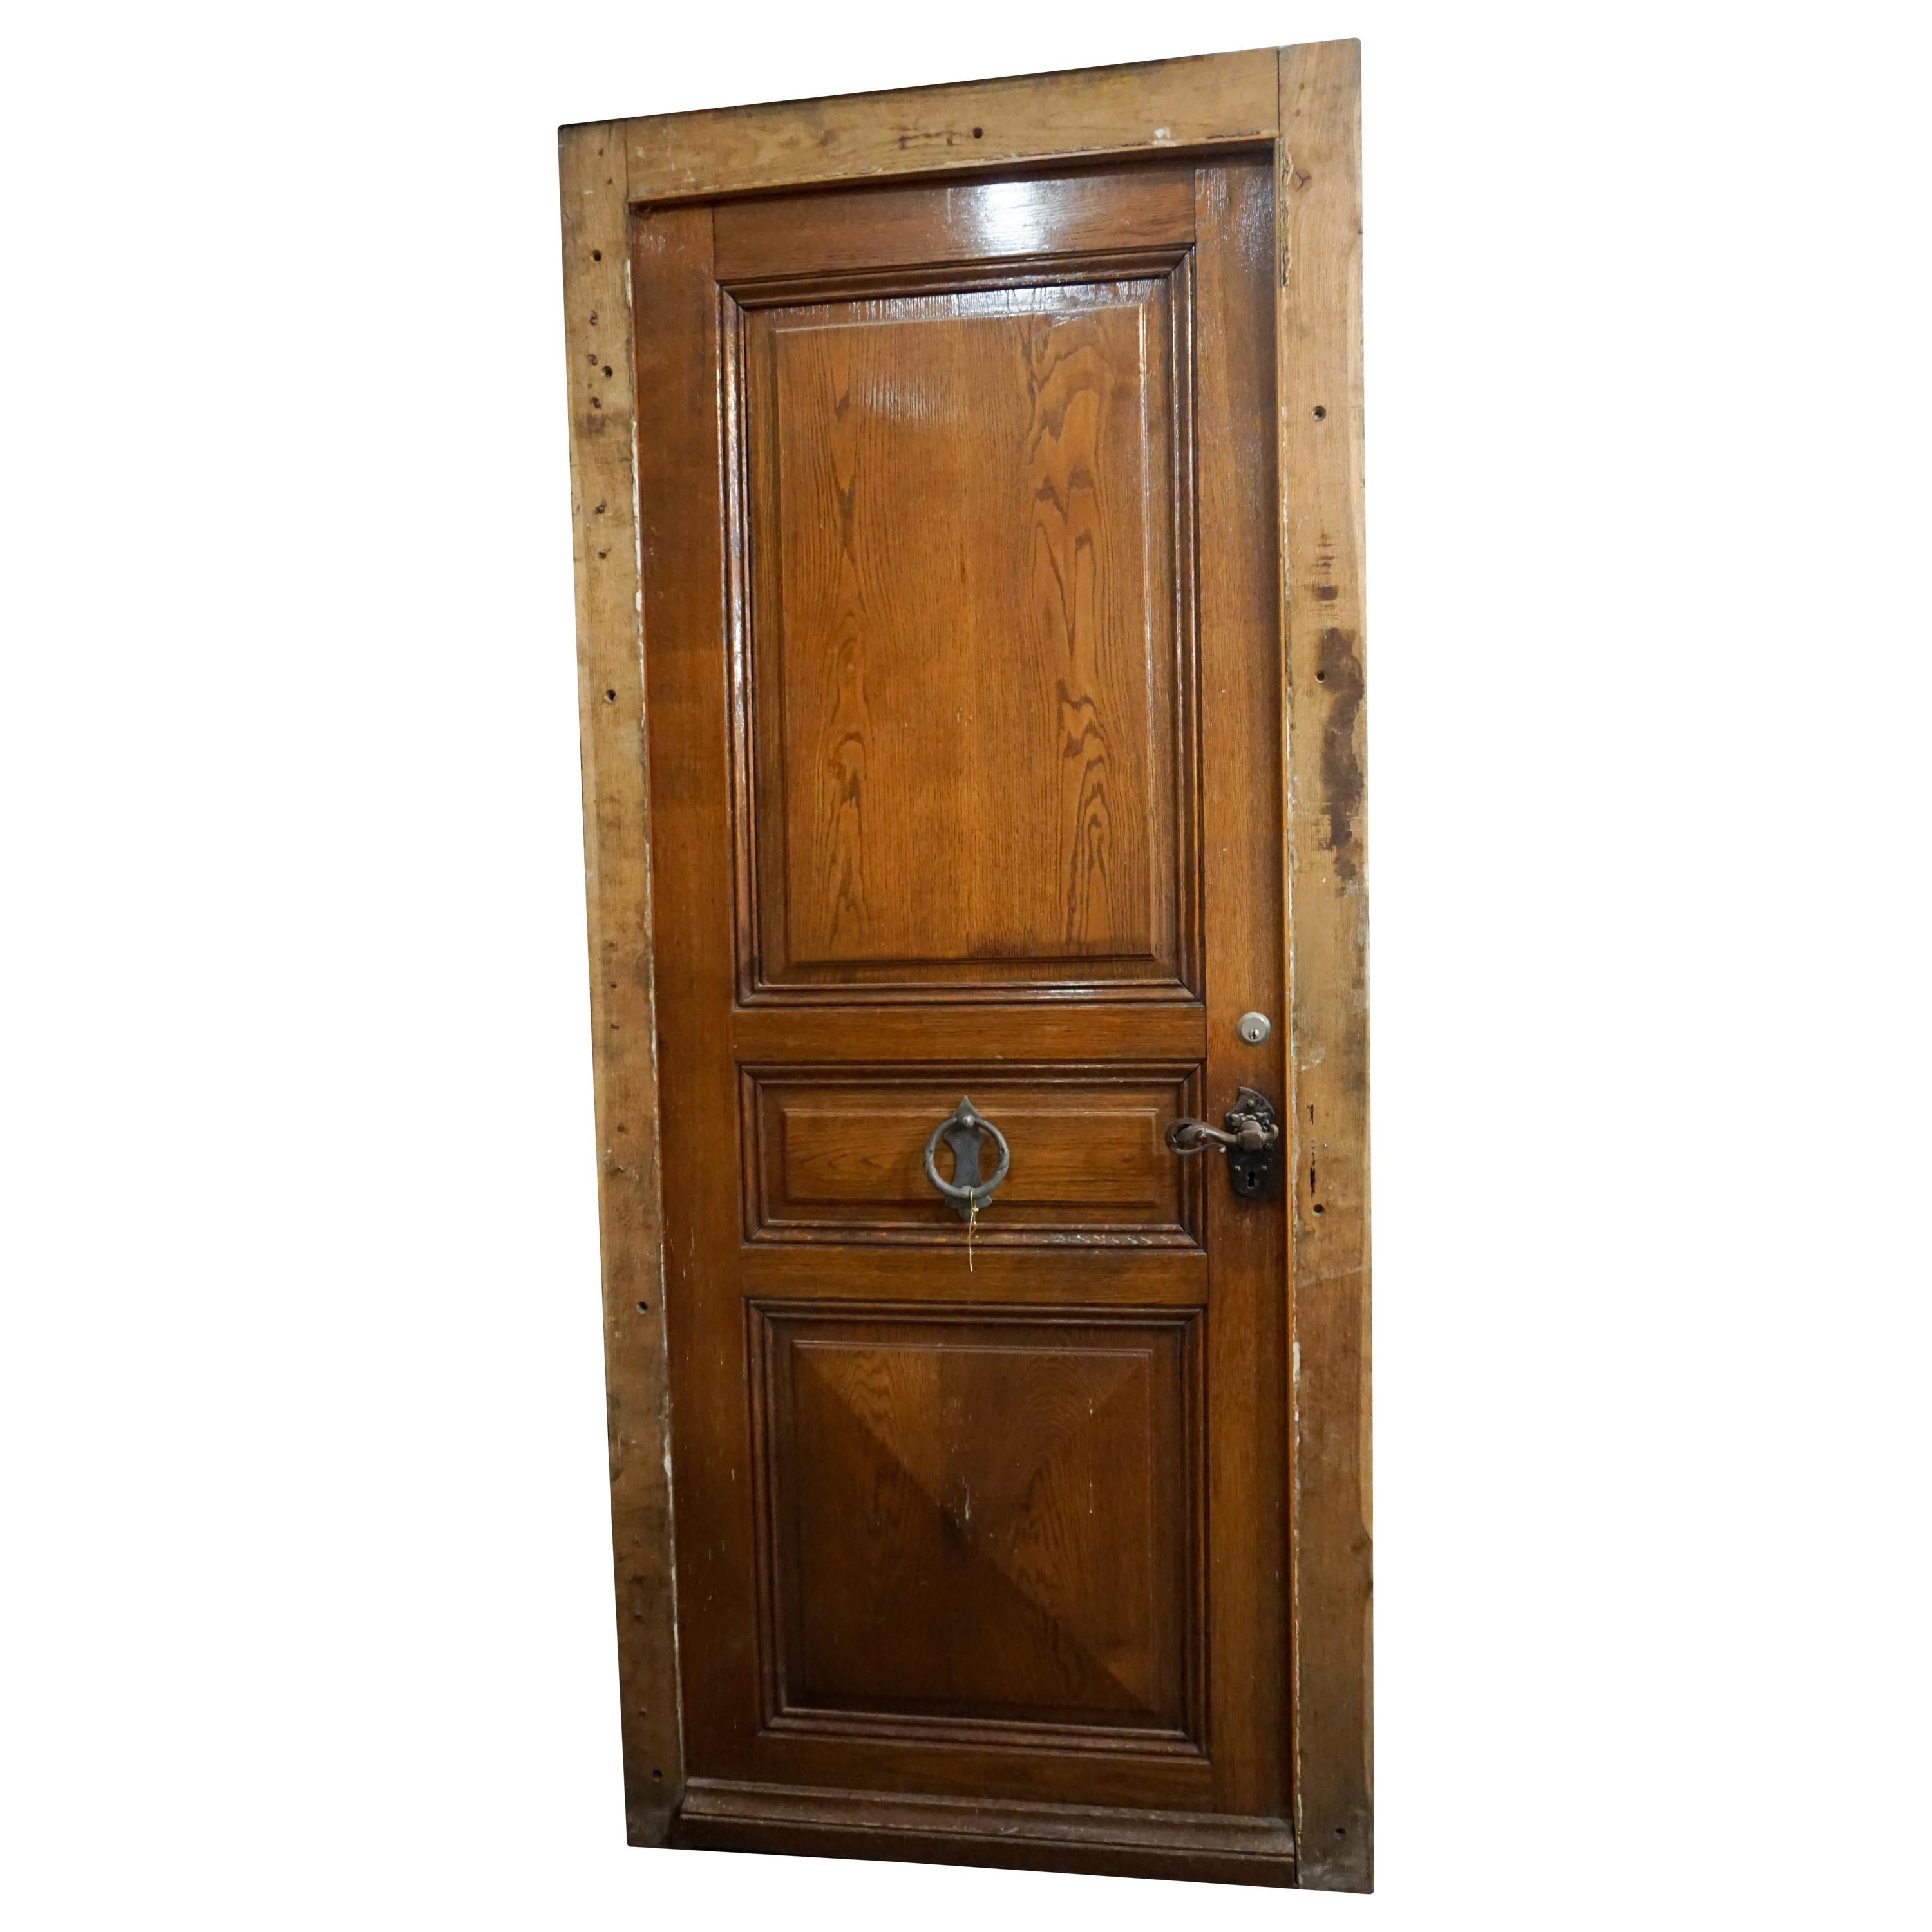 Single Oak Entry Door with Iron Knocker, circa 1880